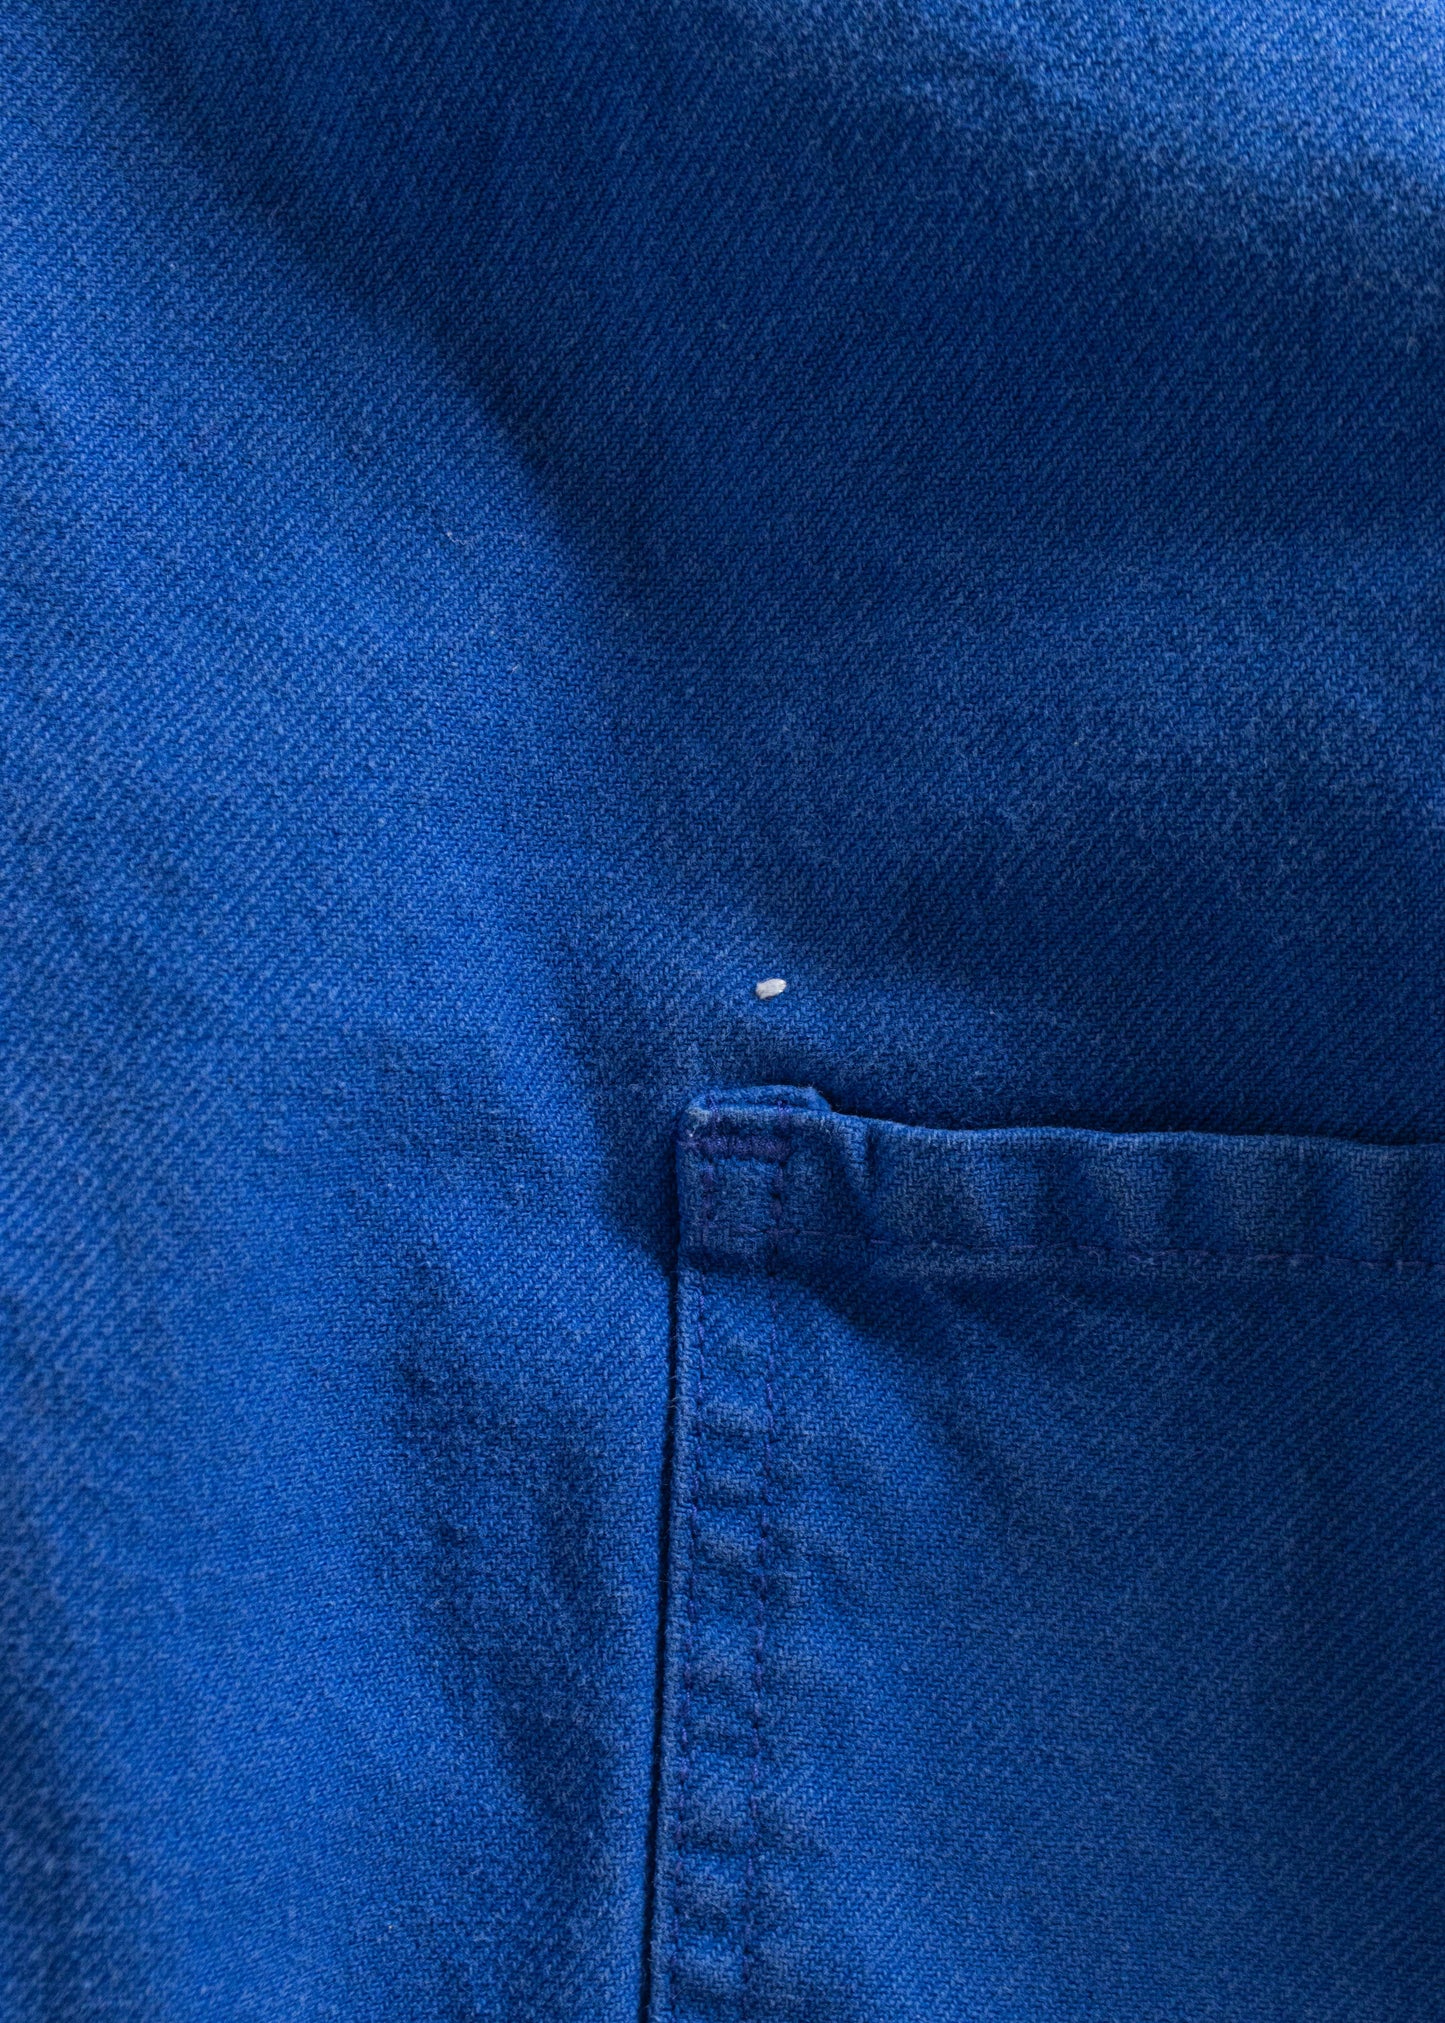 Vintage 1980s Bleu de Travail Workwear Chore Jacket Size XL/2XL